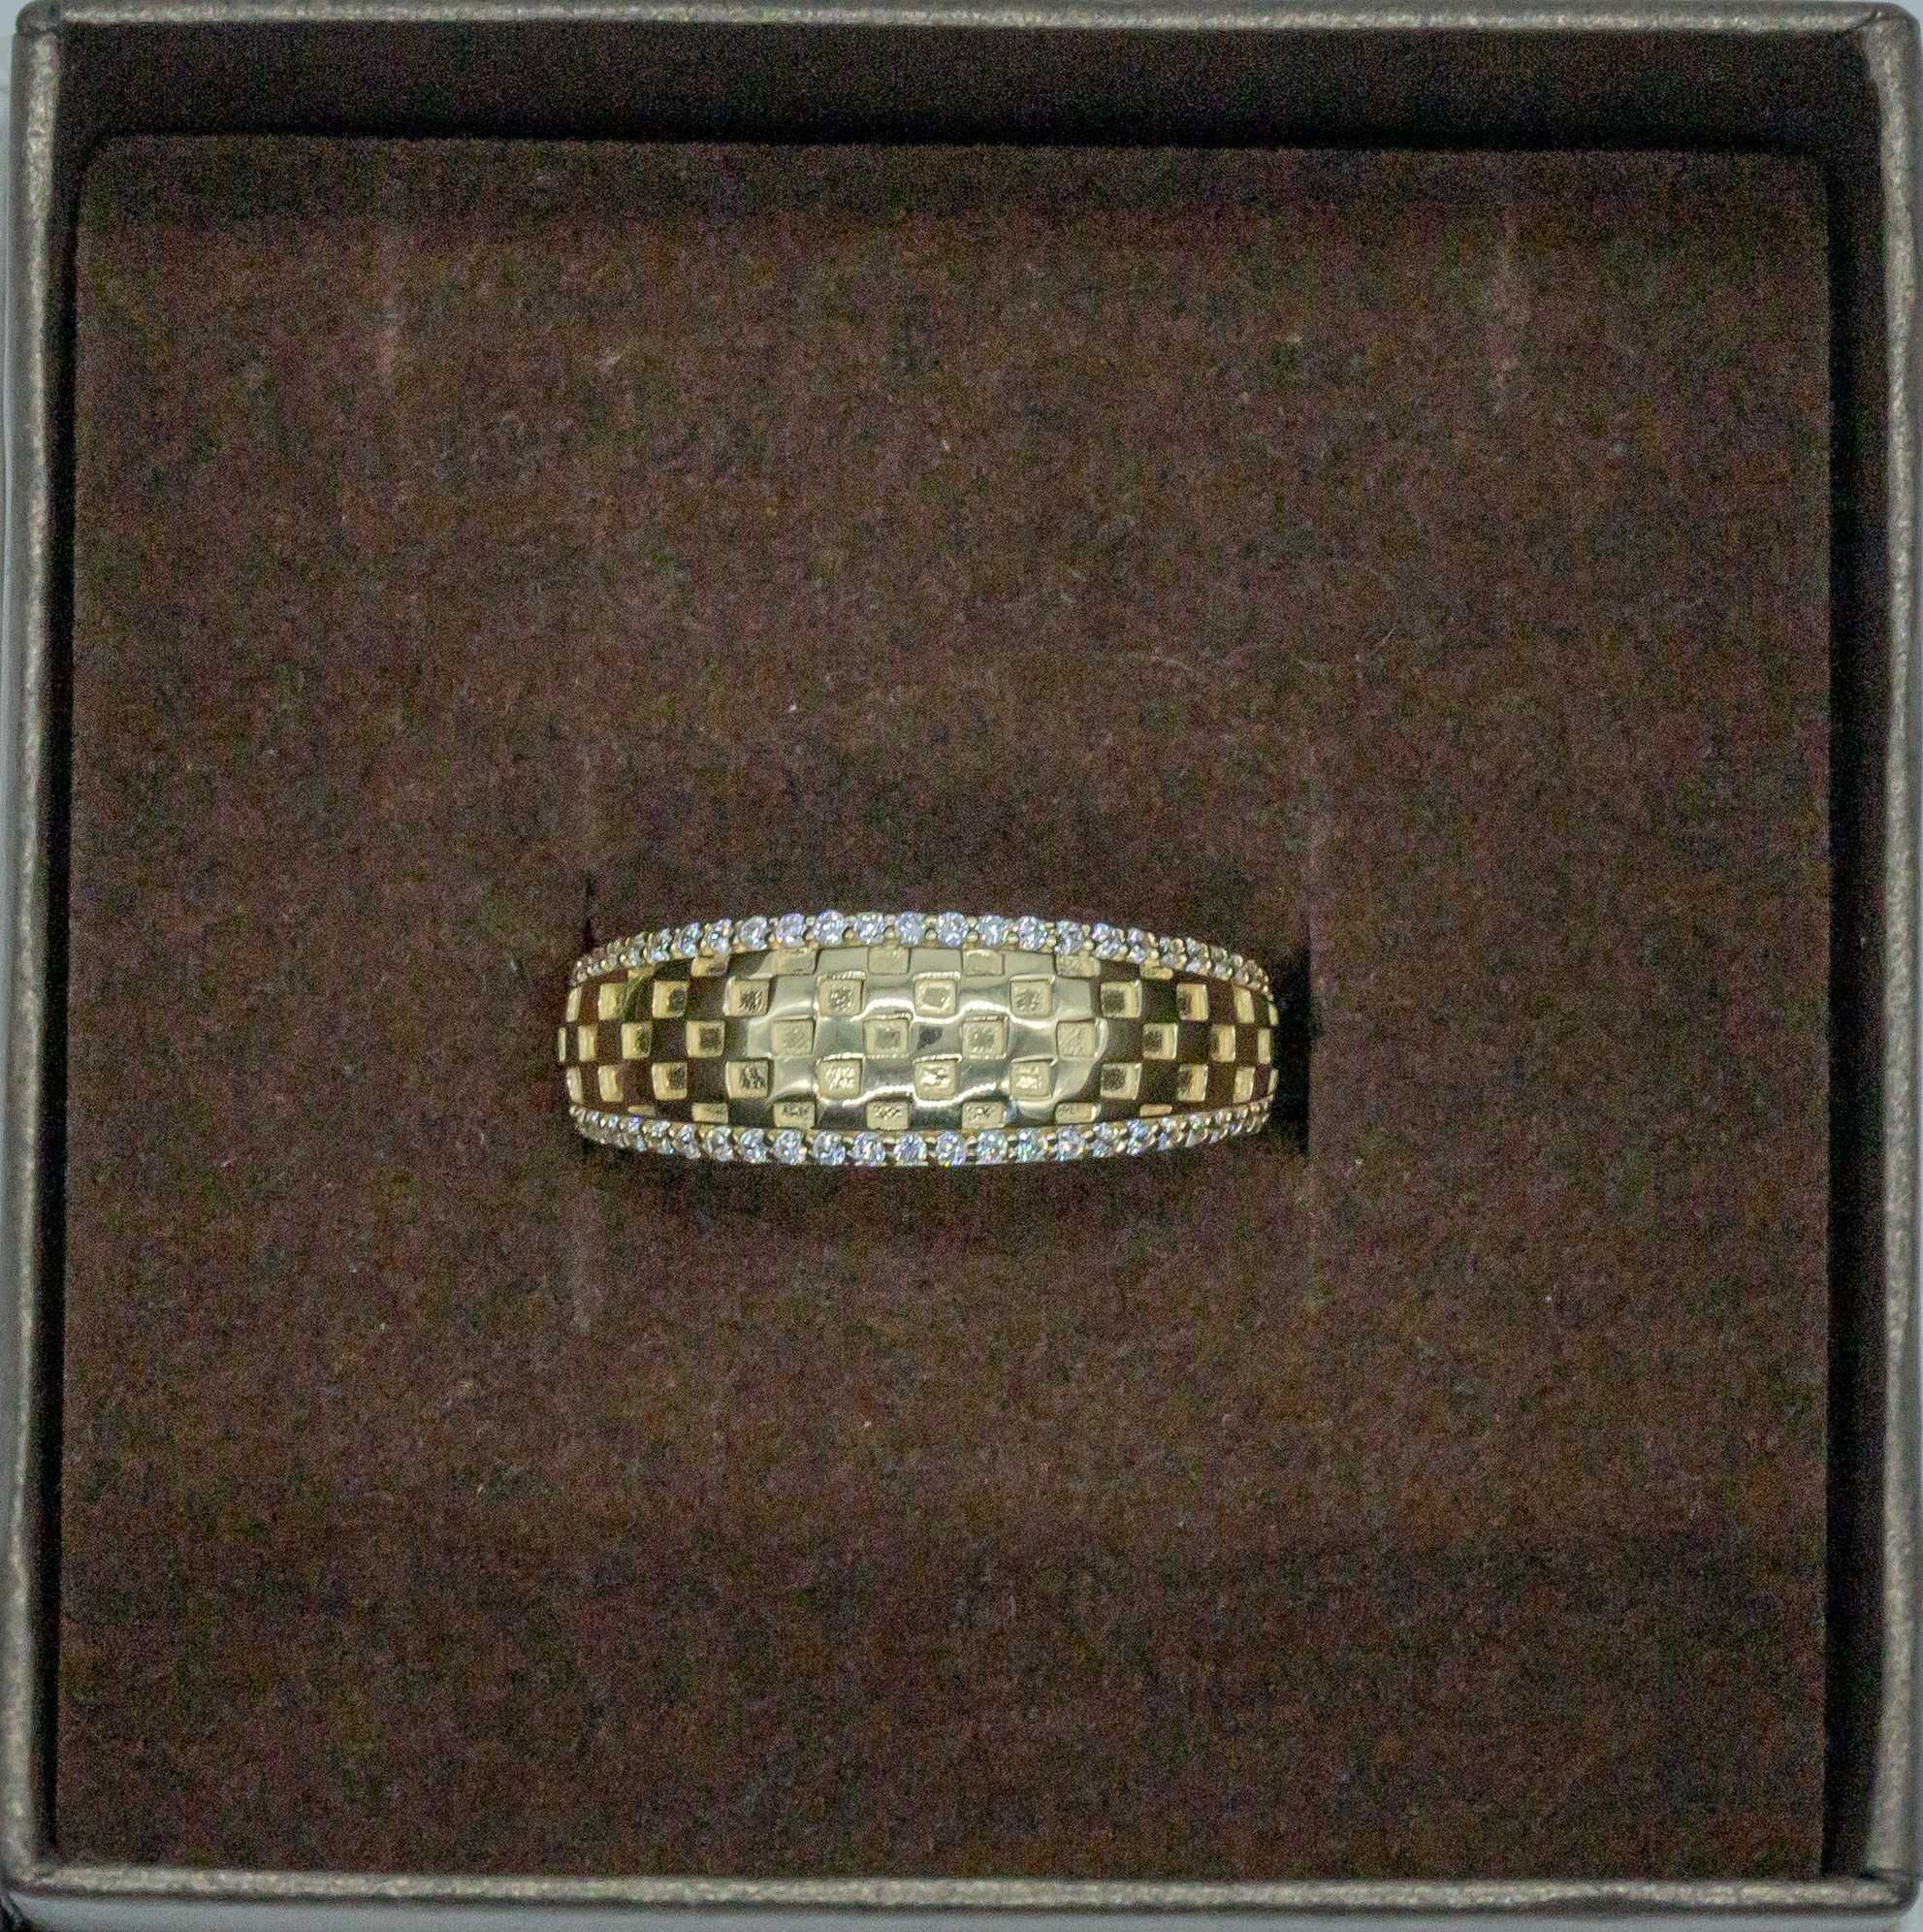 Złoty pierścionek 585 3,01 gram rozmiar 18 NOWY Okazja